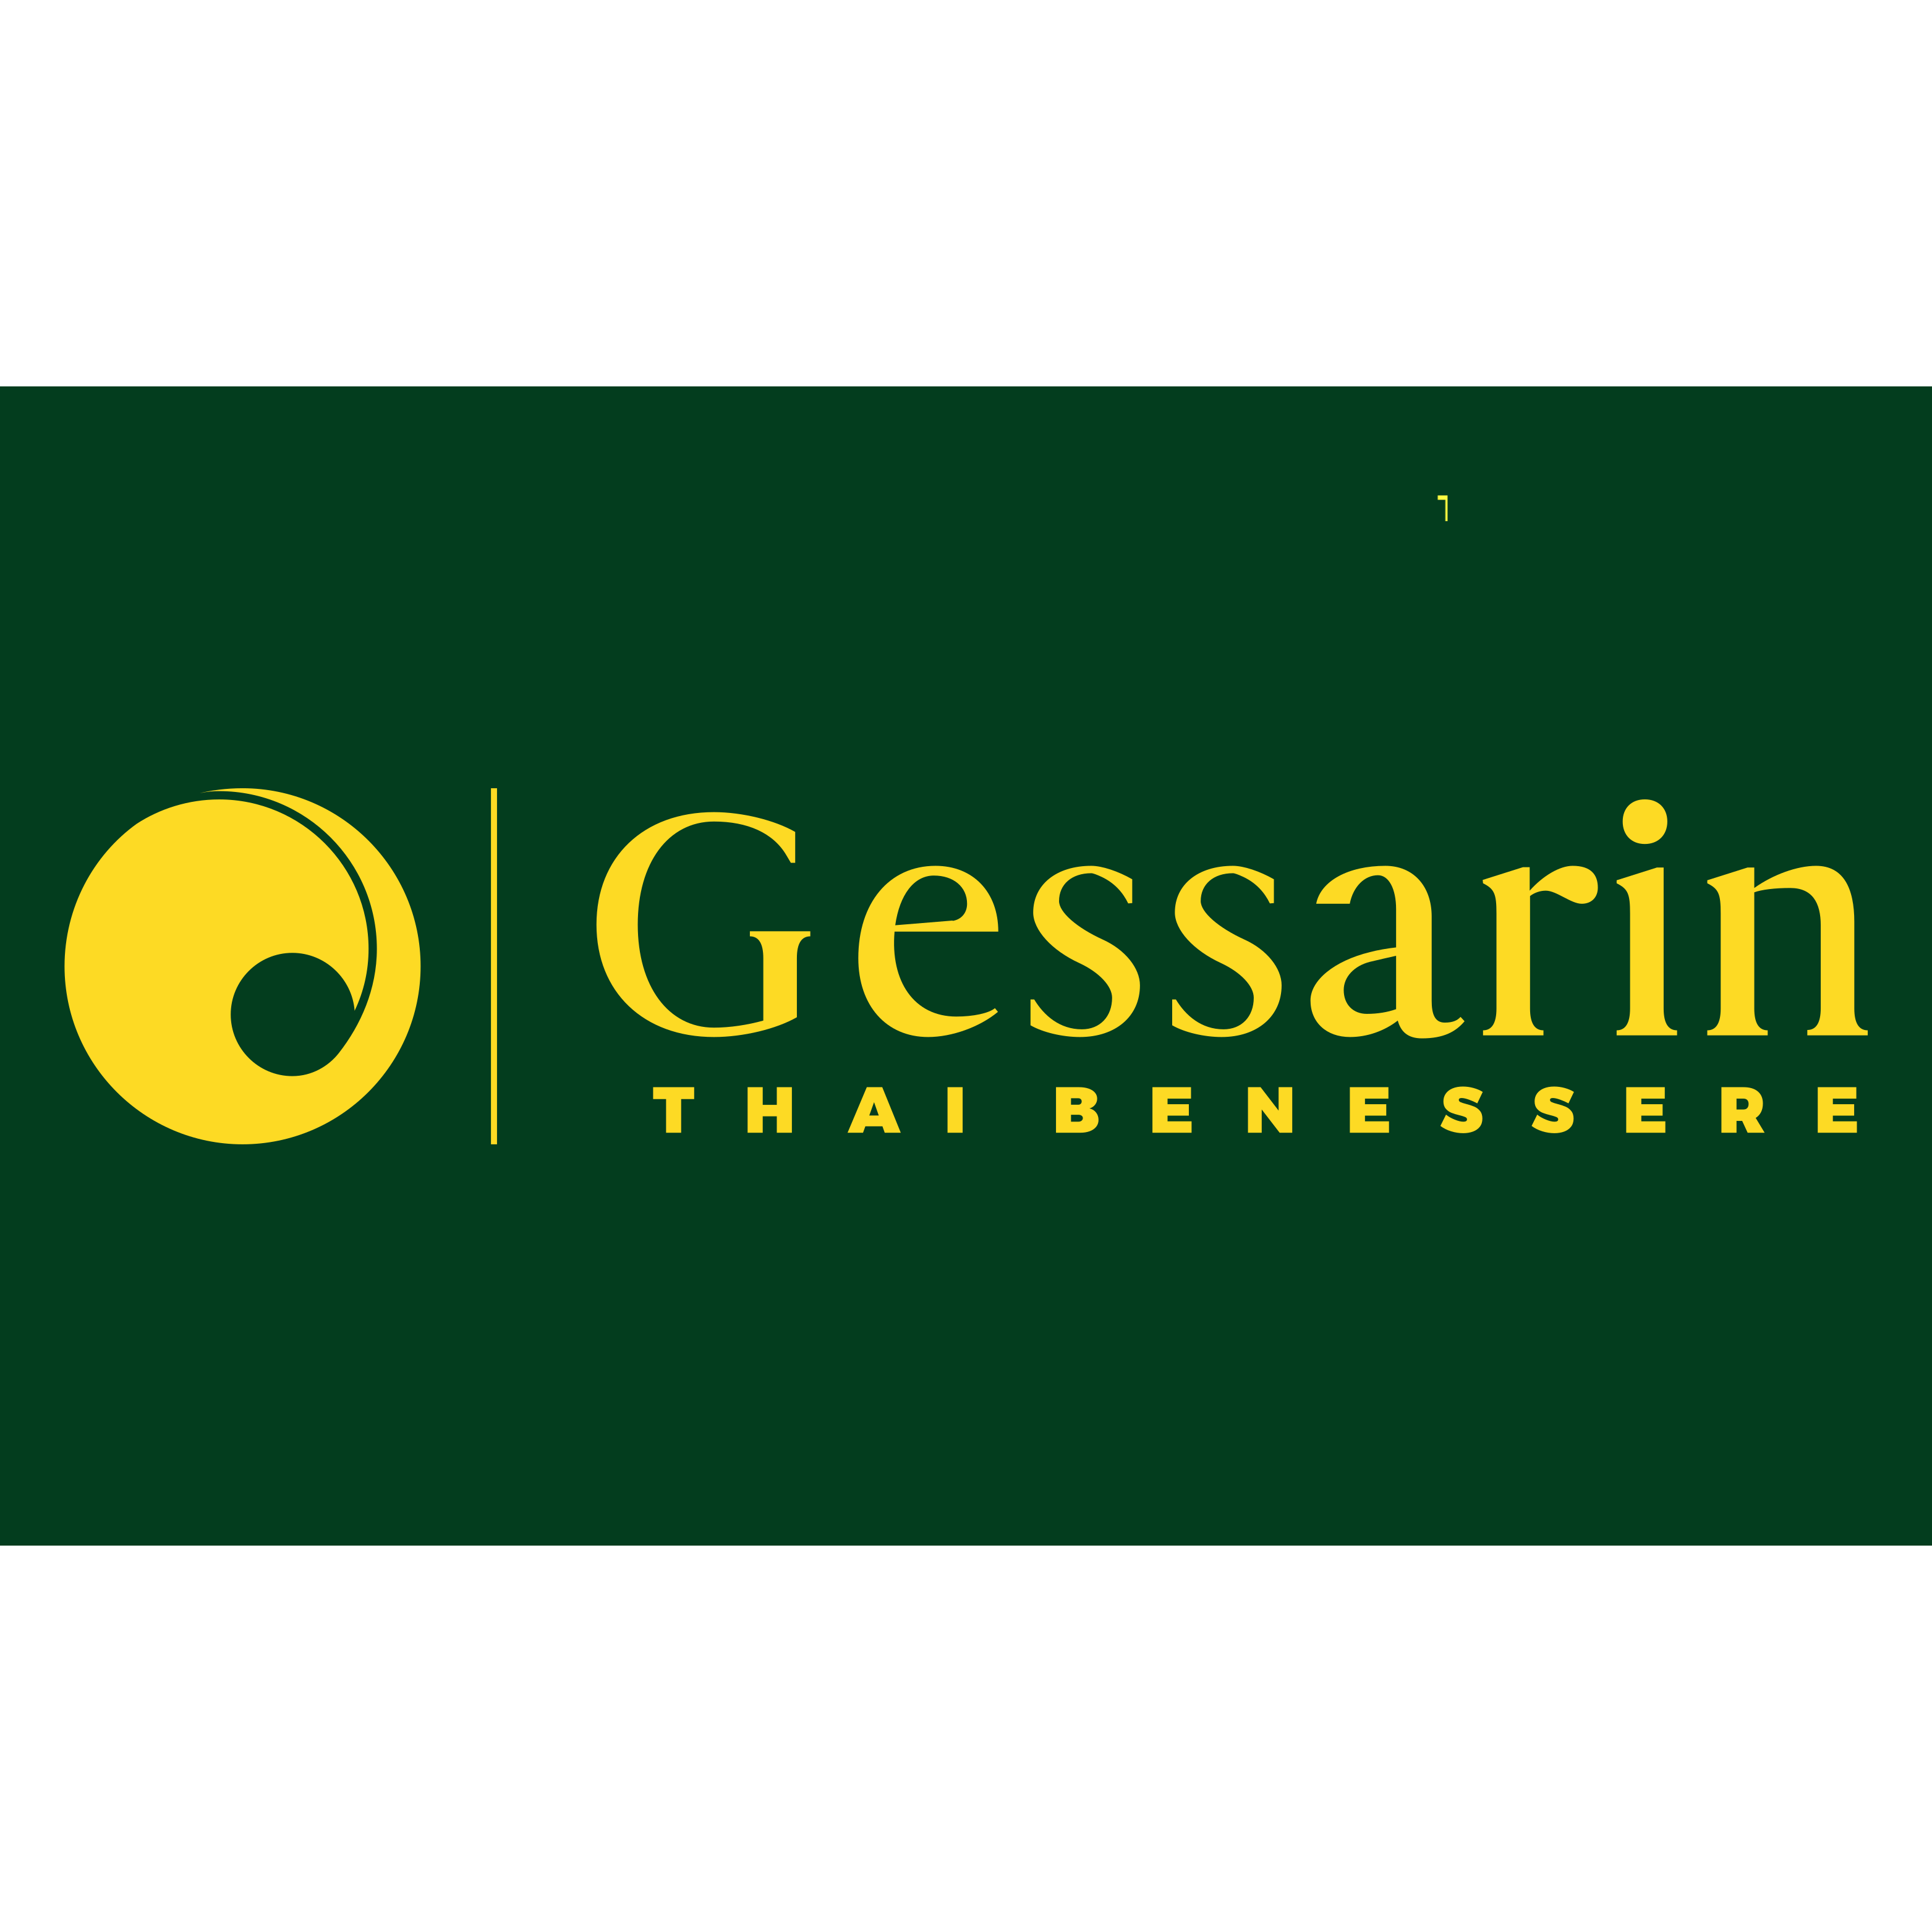 Gessarin - Thai Benessere Logo